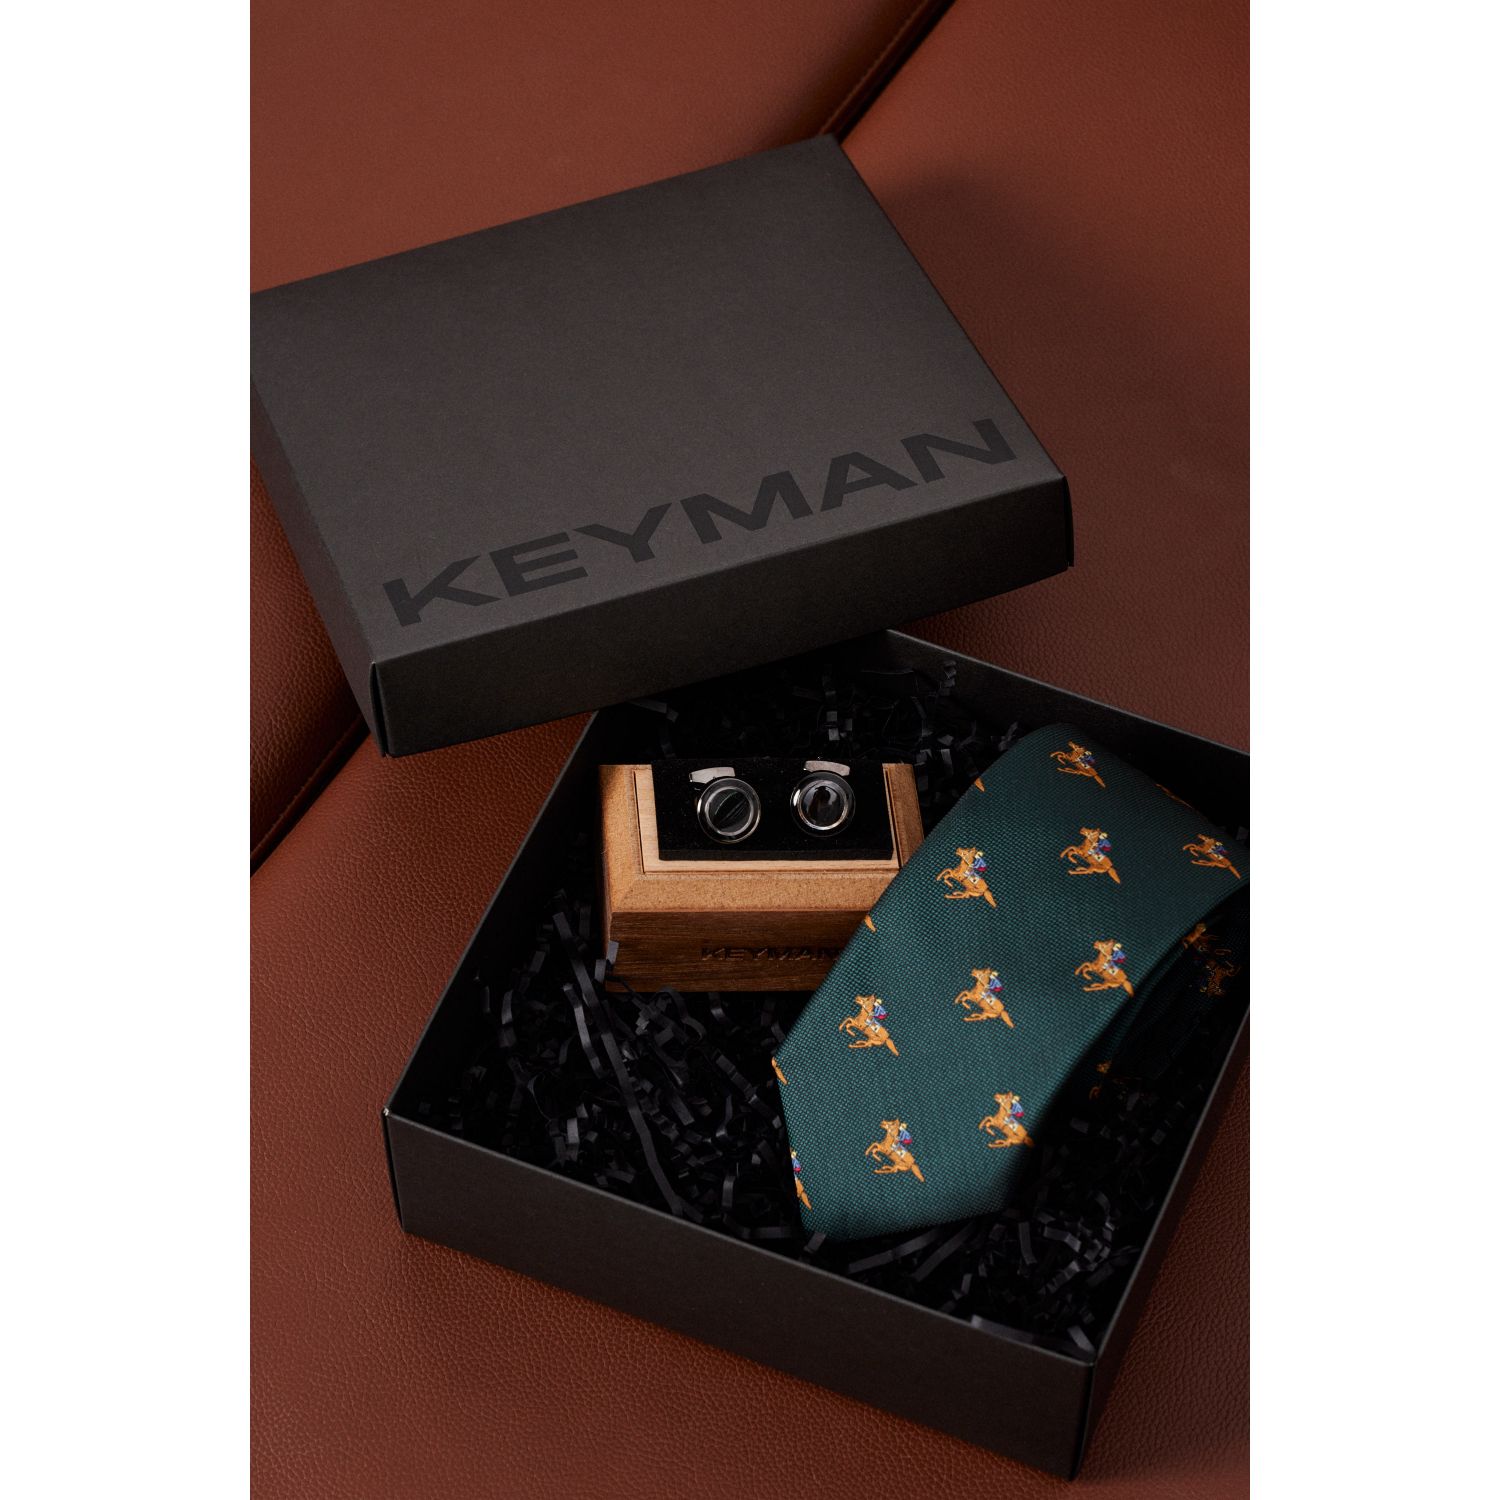 Пример подарочного набора Keyman (фирменная коробочка, галстук и запонки)